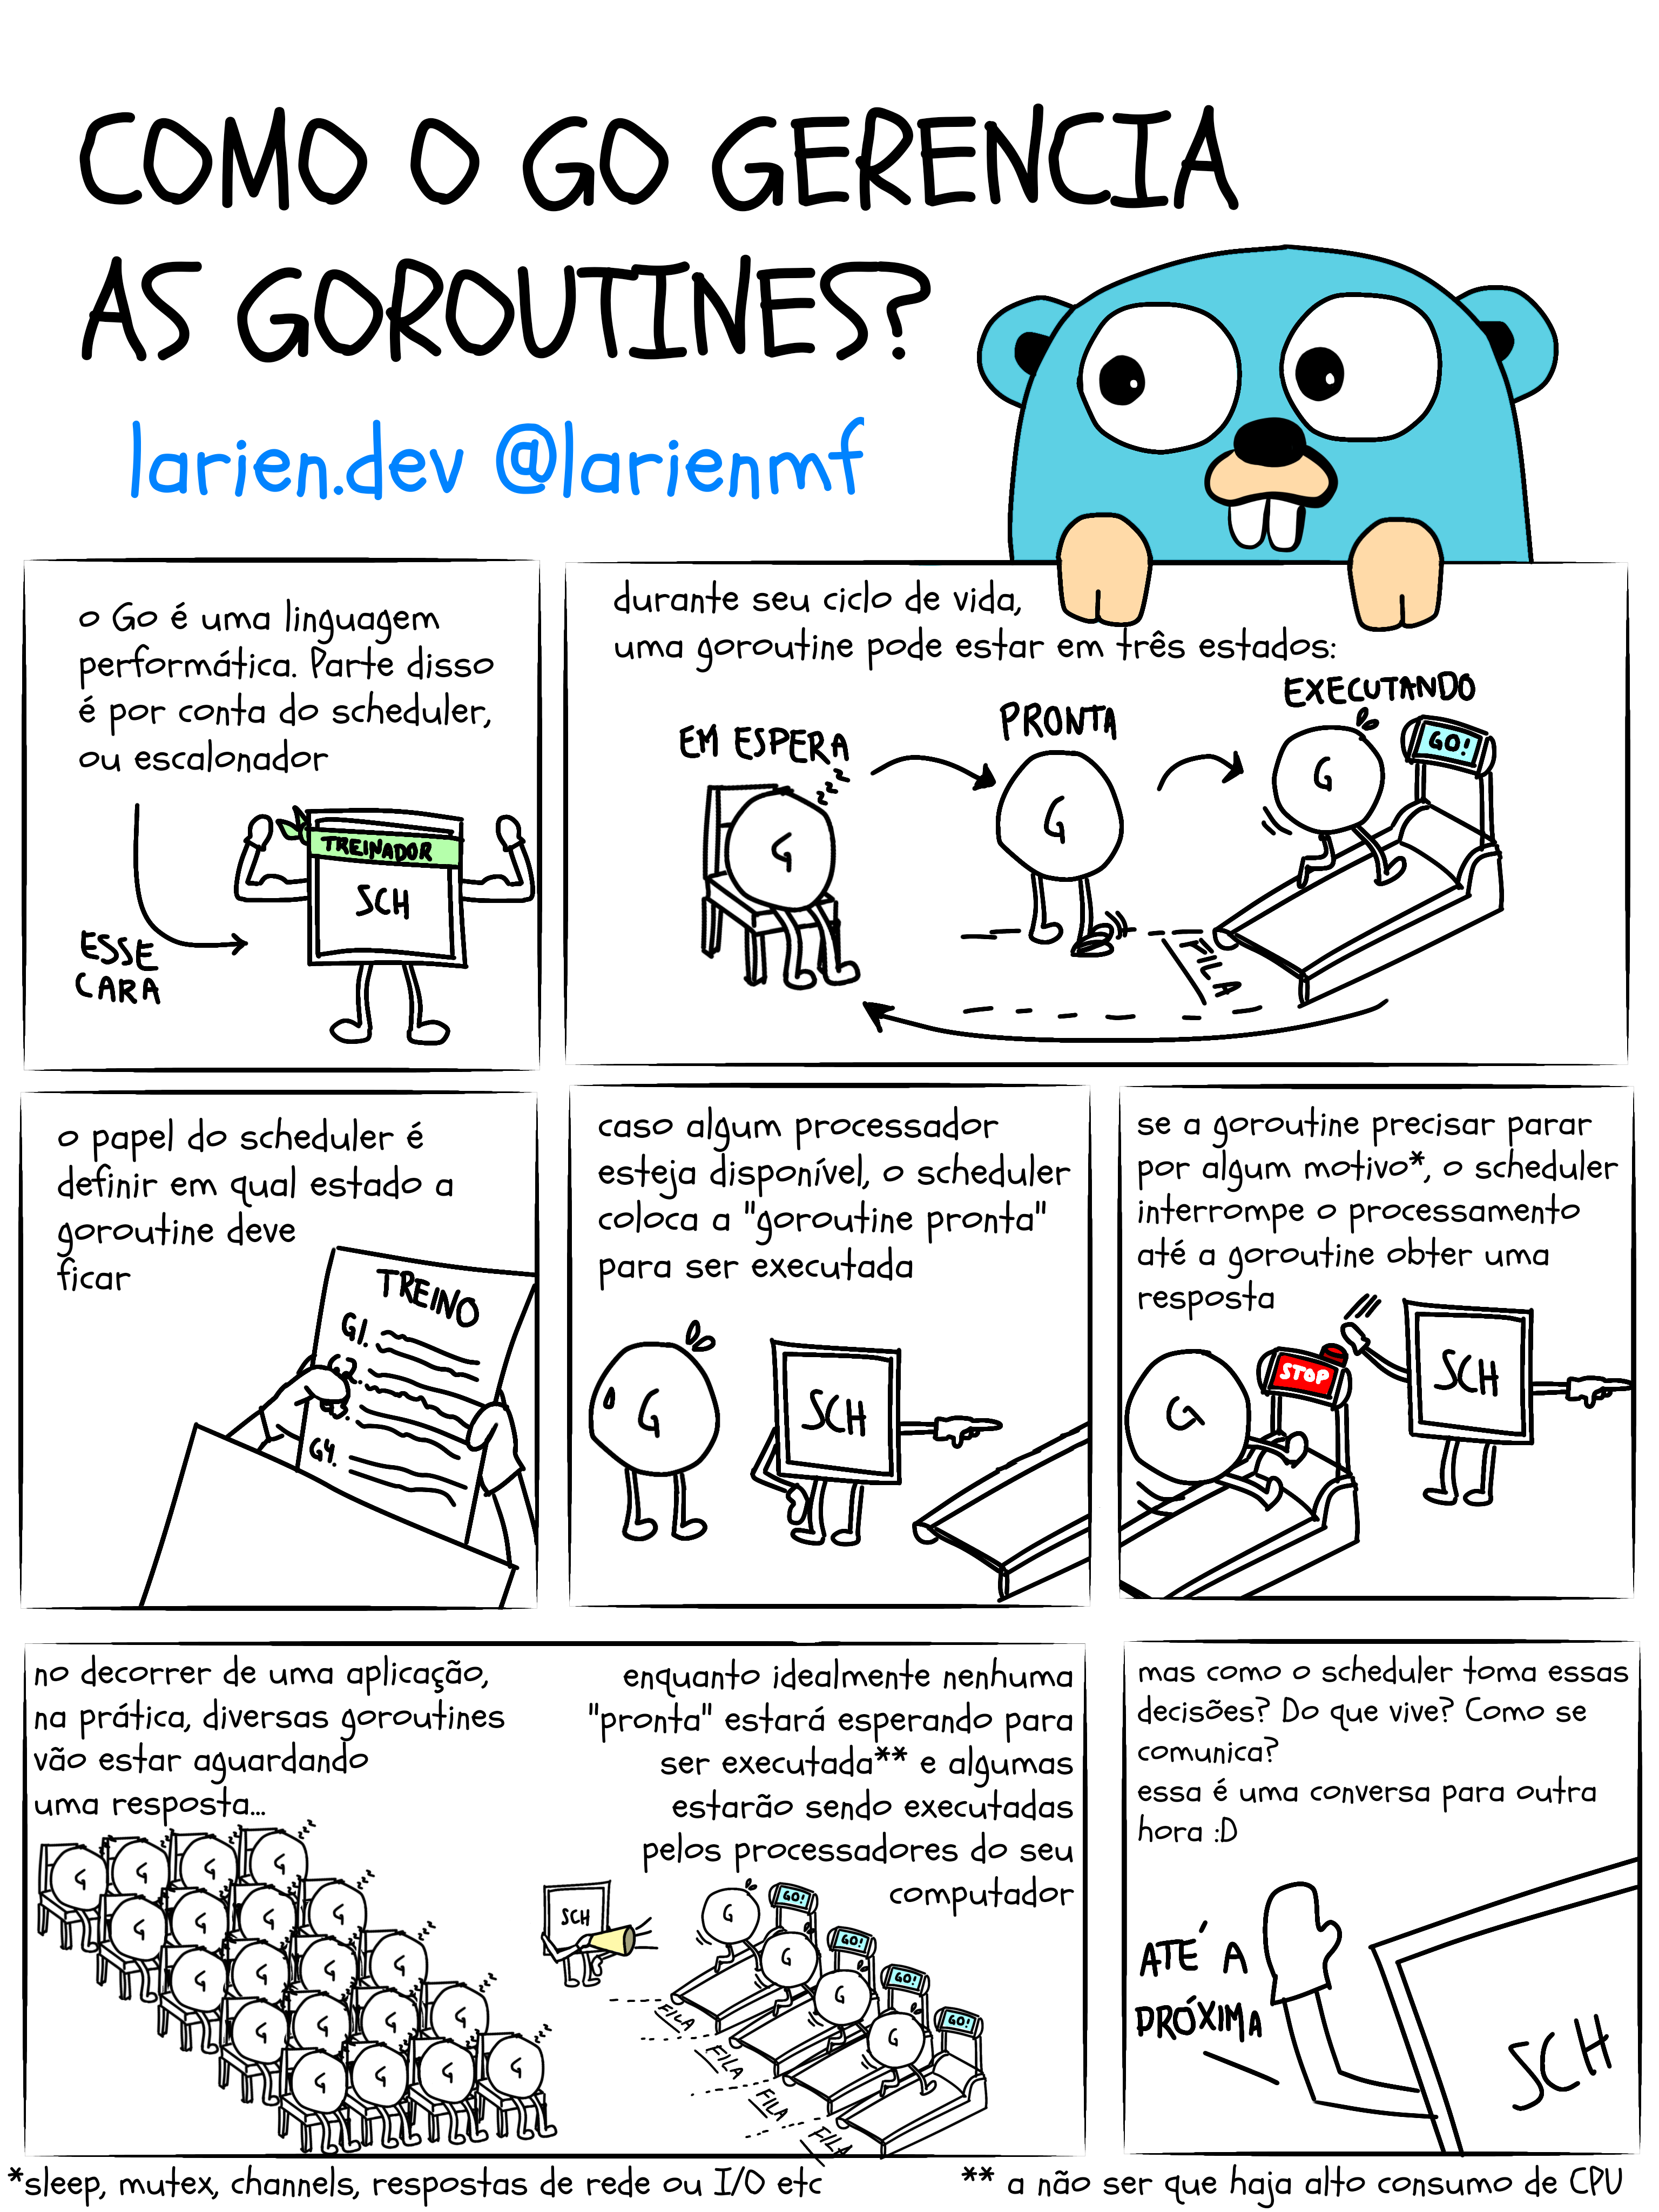 Como o Go gerencia as goroutines?